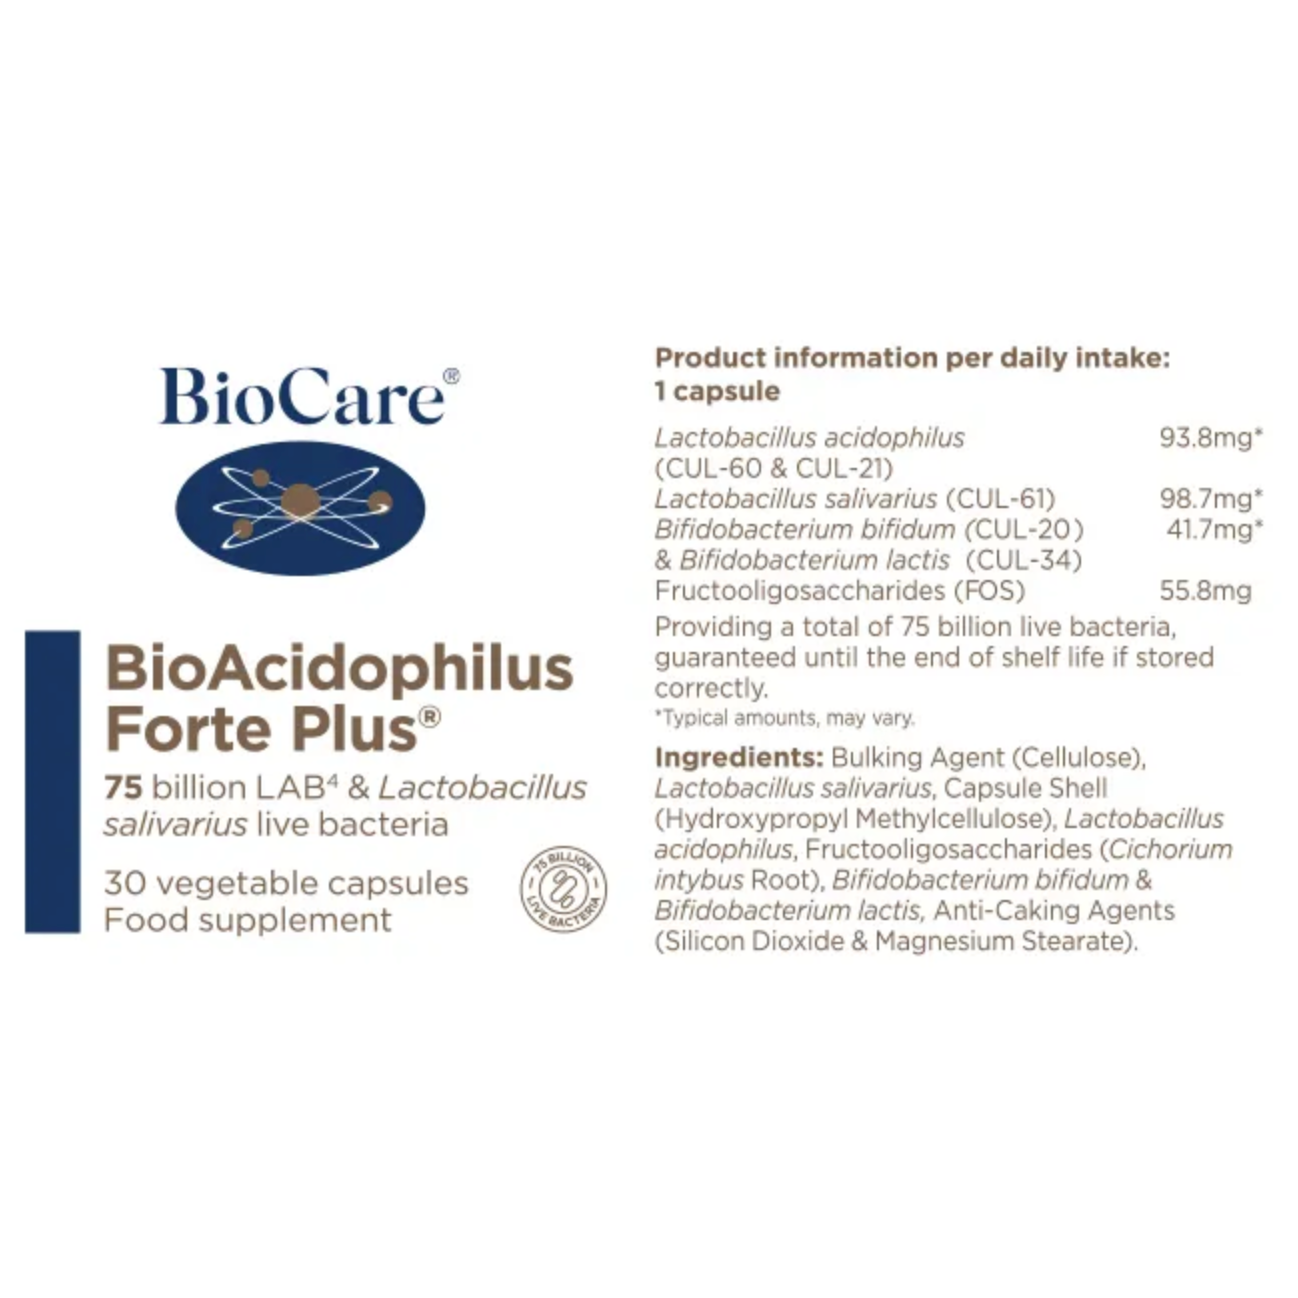 BioCare BioAcidophilus Forte Plus Probiotic 75 Billion LAB4 complex of live bacteria with Lactobacillus salivarius 30 Capsules Vegan